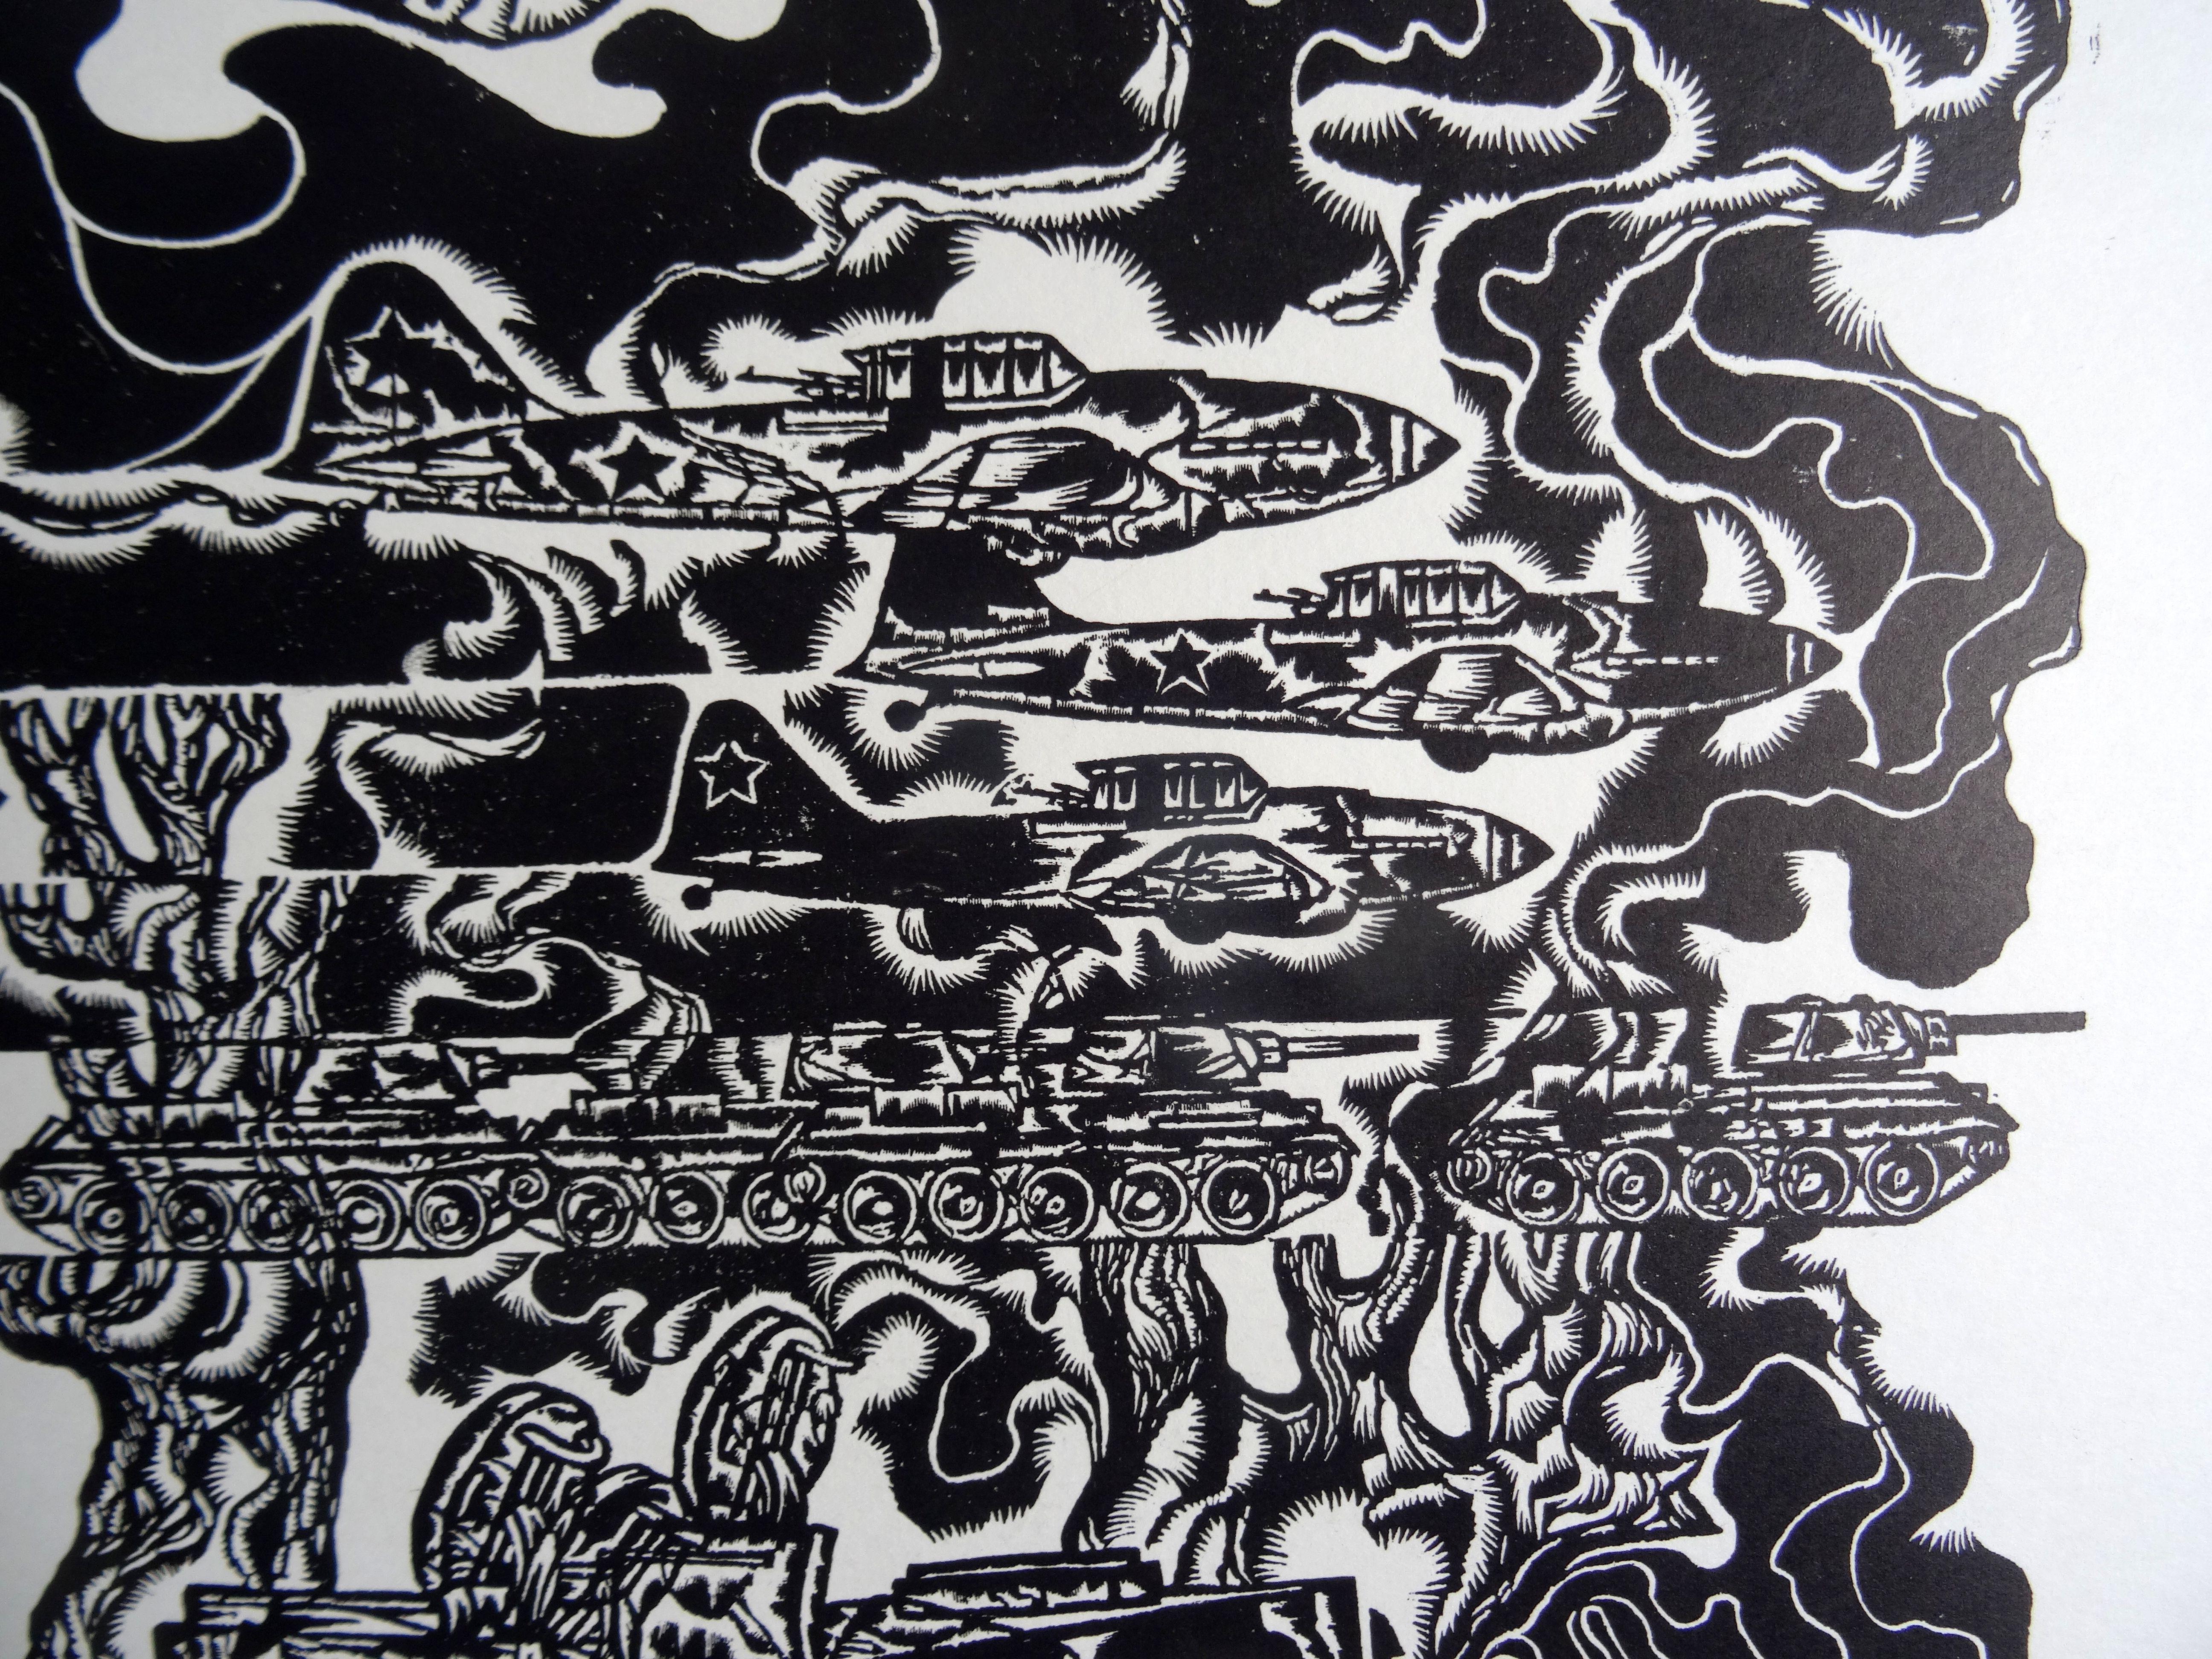 Fracture. 1984, Linolschnitt, Druckgröße 47x58 cm; insgesamt 60x68 cm (Grau), Figurative Print, von Dainis Rozkalns